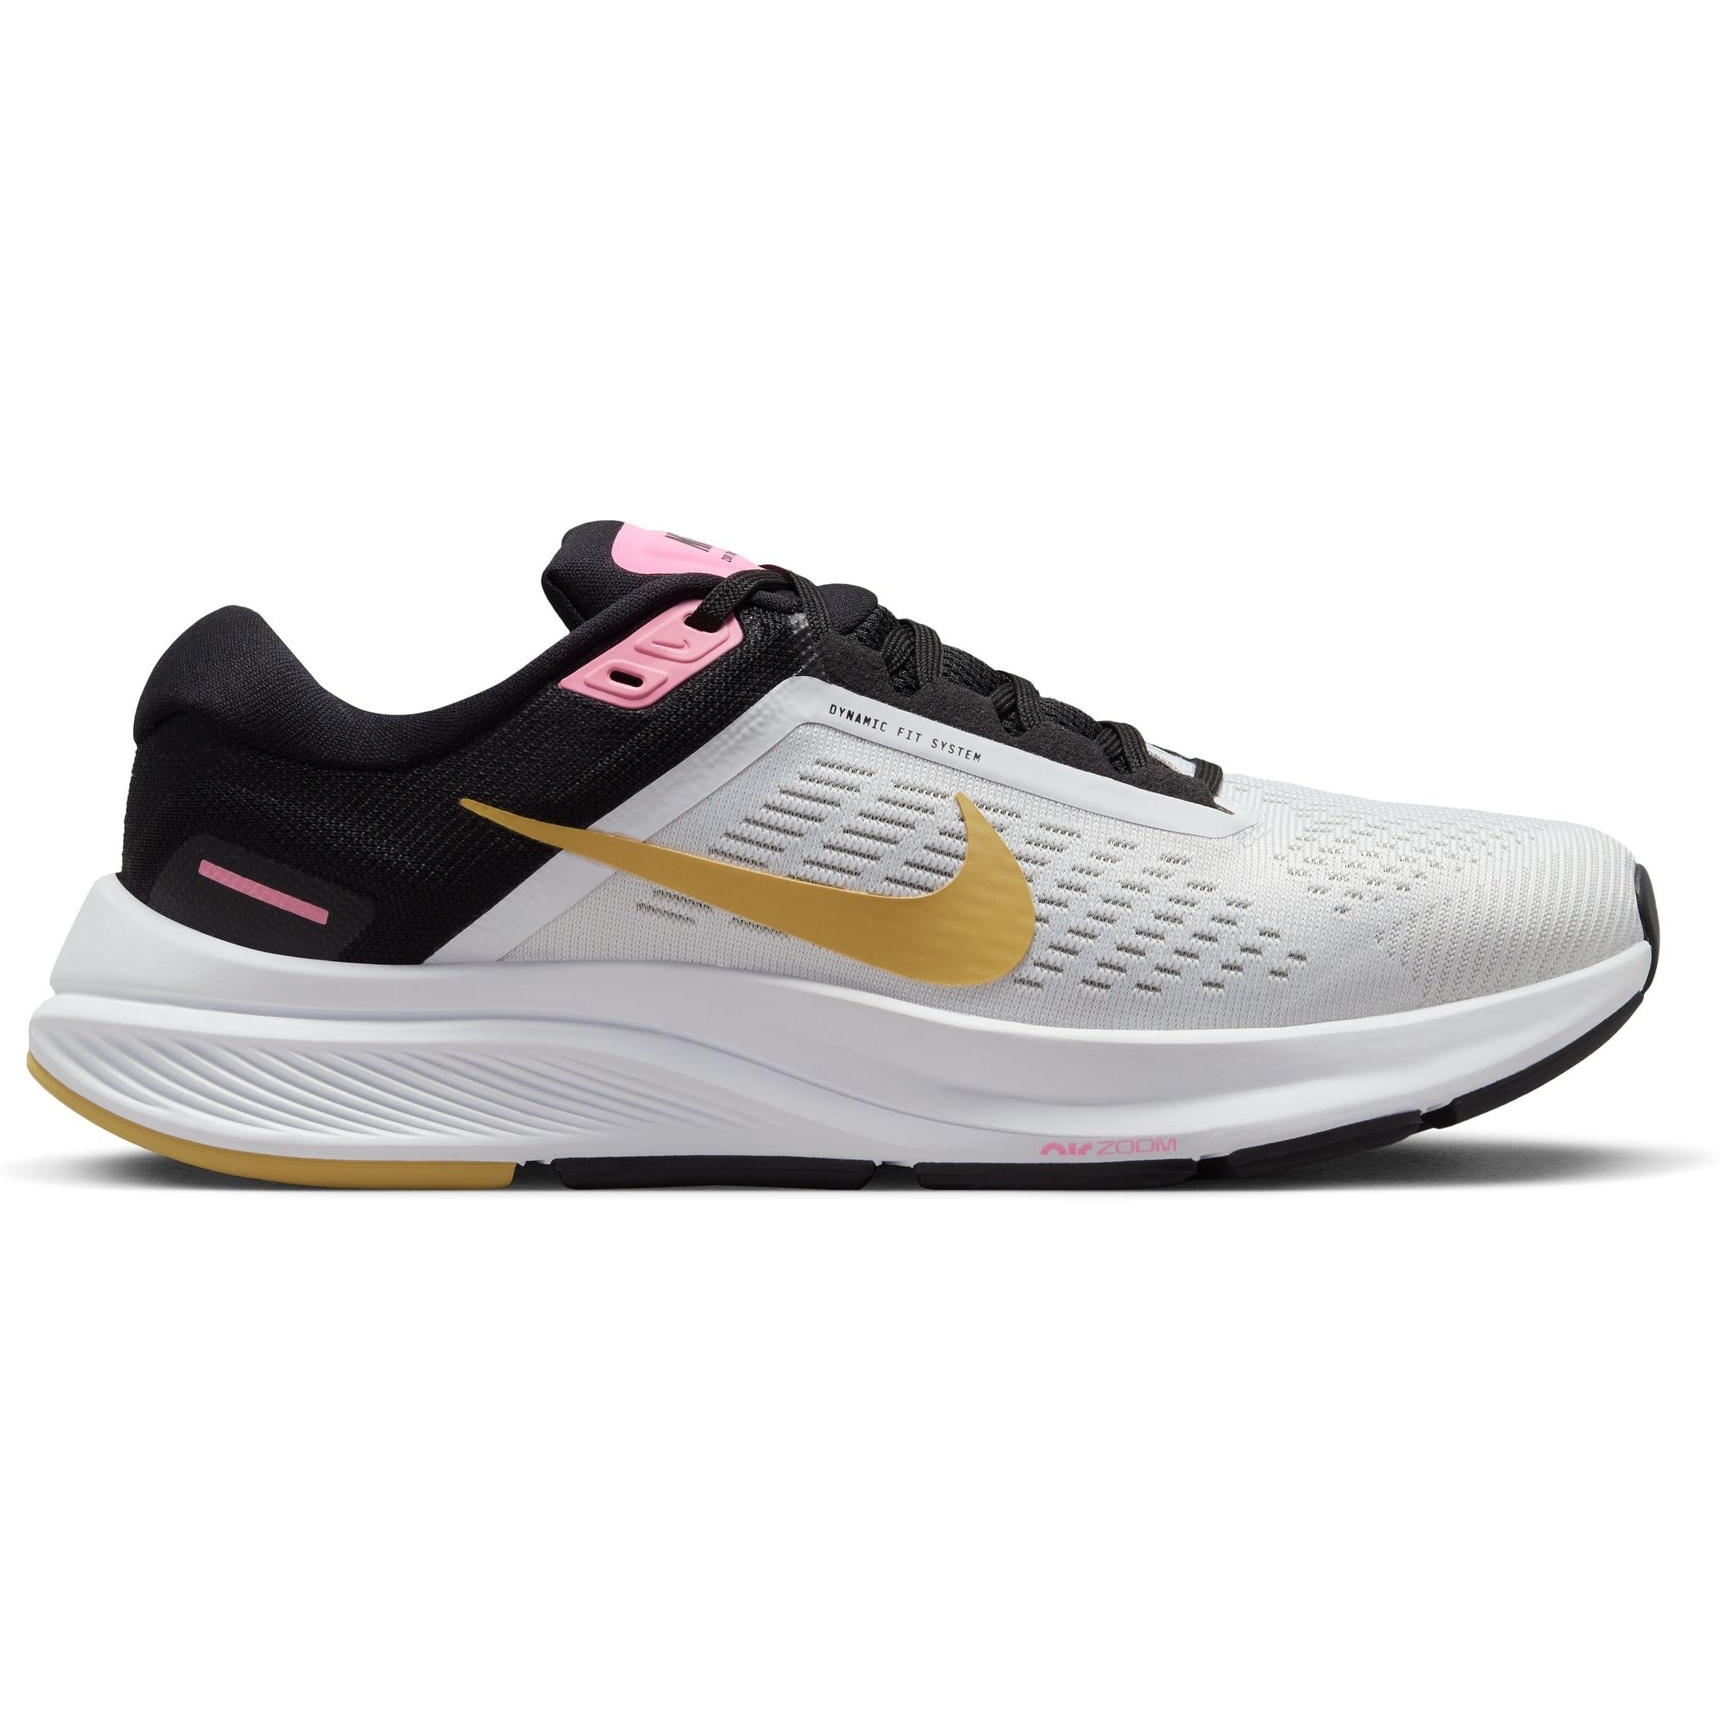 Produktbild von Nike Air Zoom Structure 24 Damen-Laufschuh - white/wheat gold-black-pink spell DA8570-106